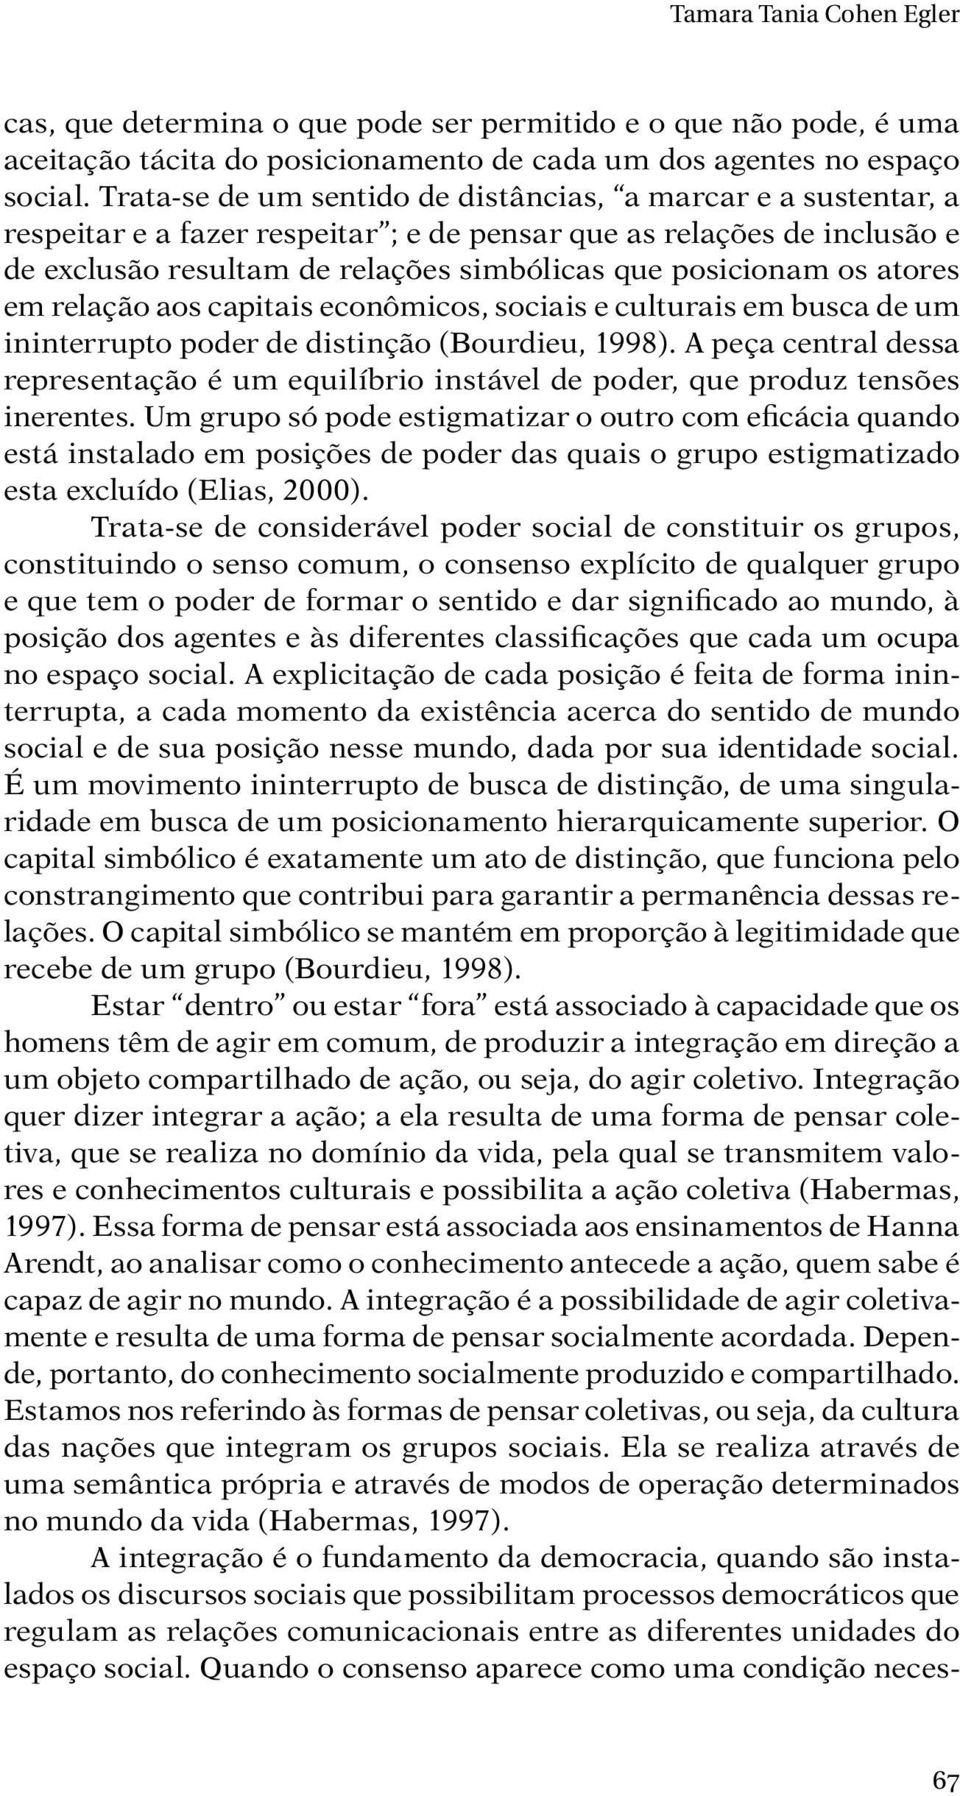 atores em relação aos capitais econômicos, sociais e culturais em busca de um ininterrupto poder de distinção (Bourdieu, 1998).